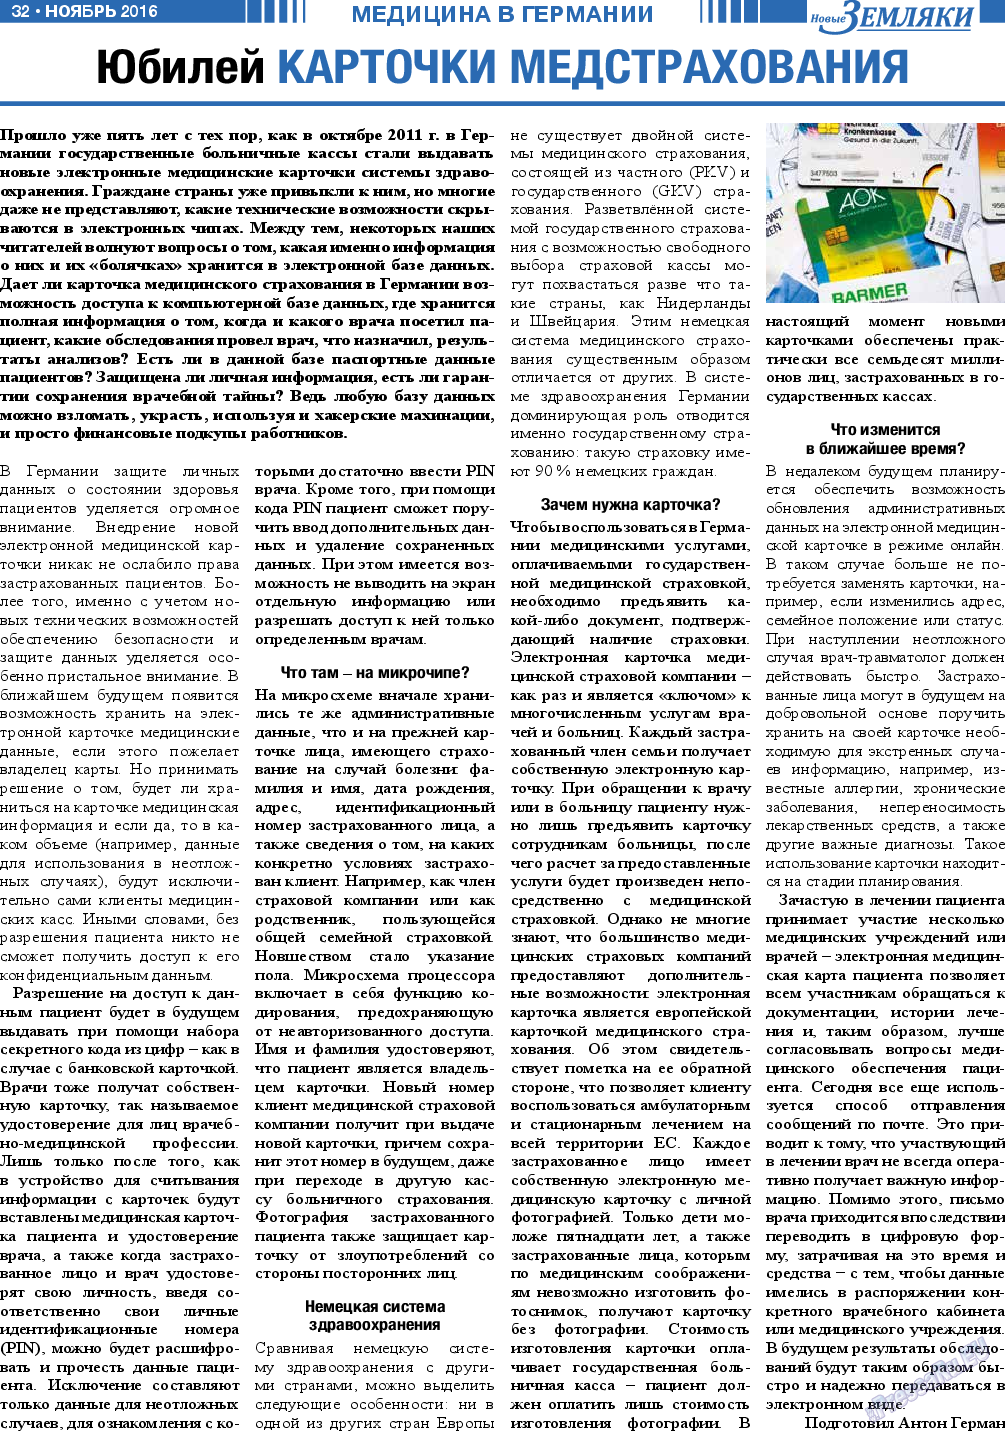 Новые Земляки, газета. 2016 №11 стр.32